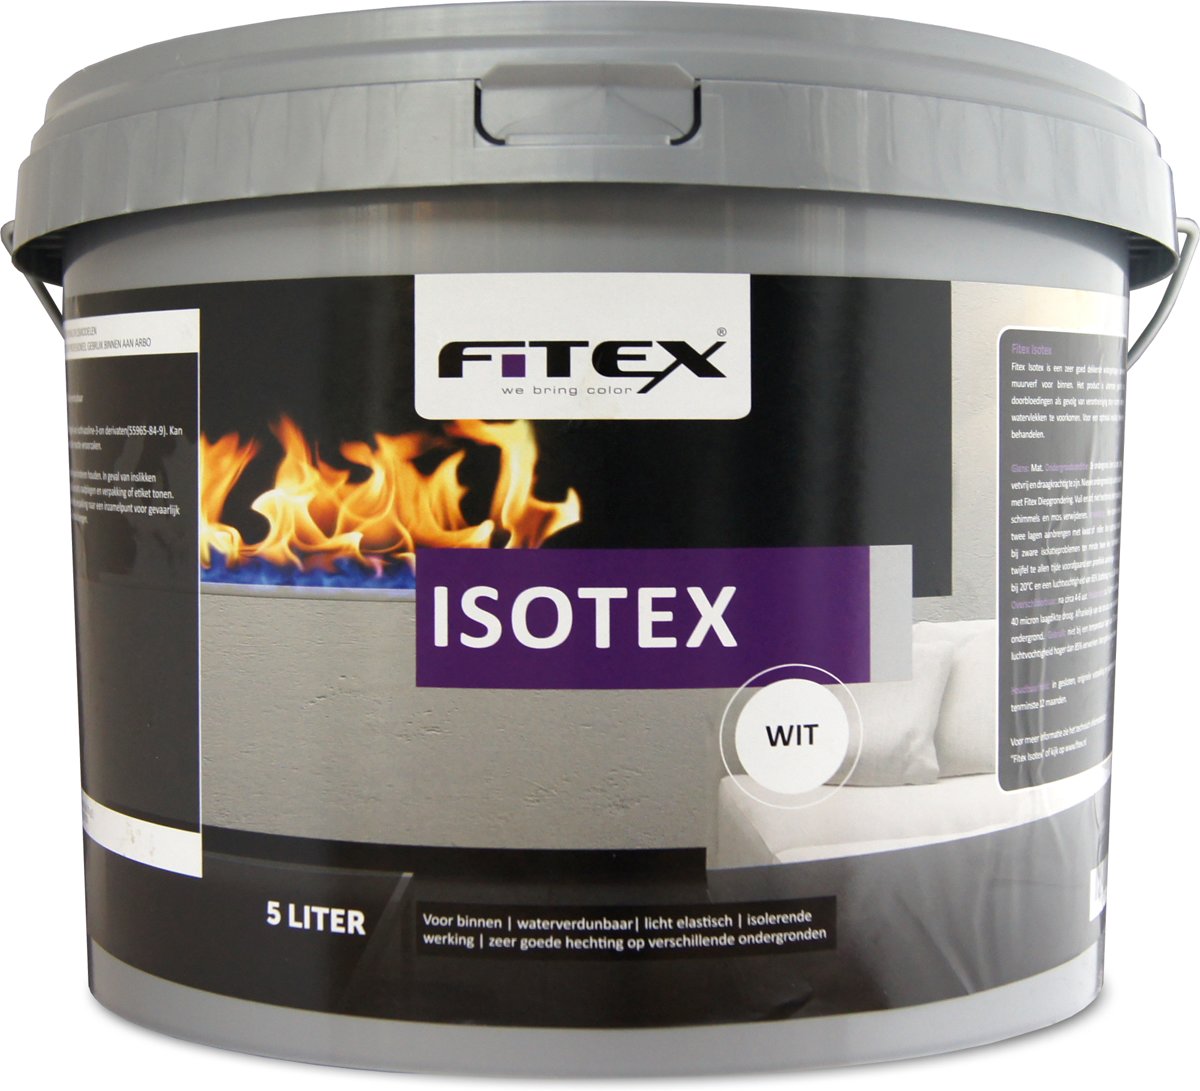 Fitex Isotex - Wit - 5 liter